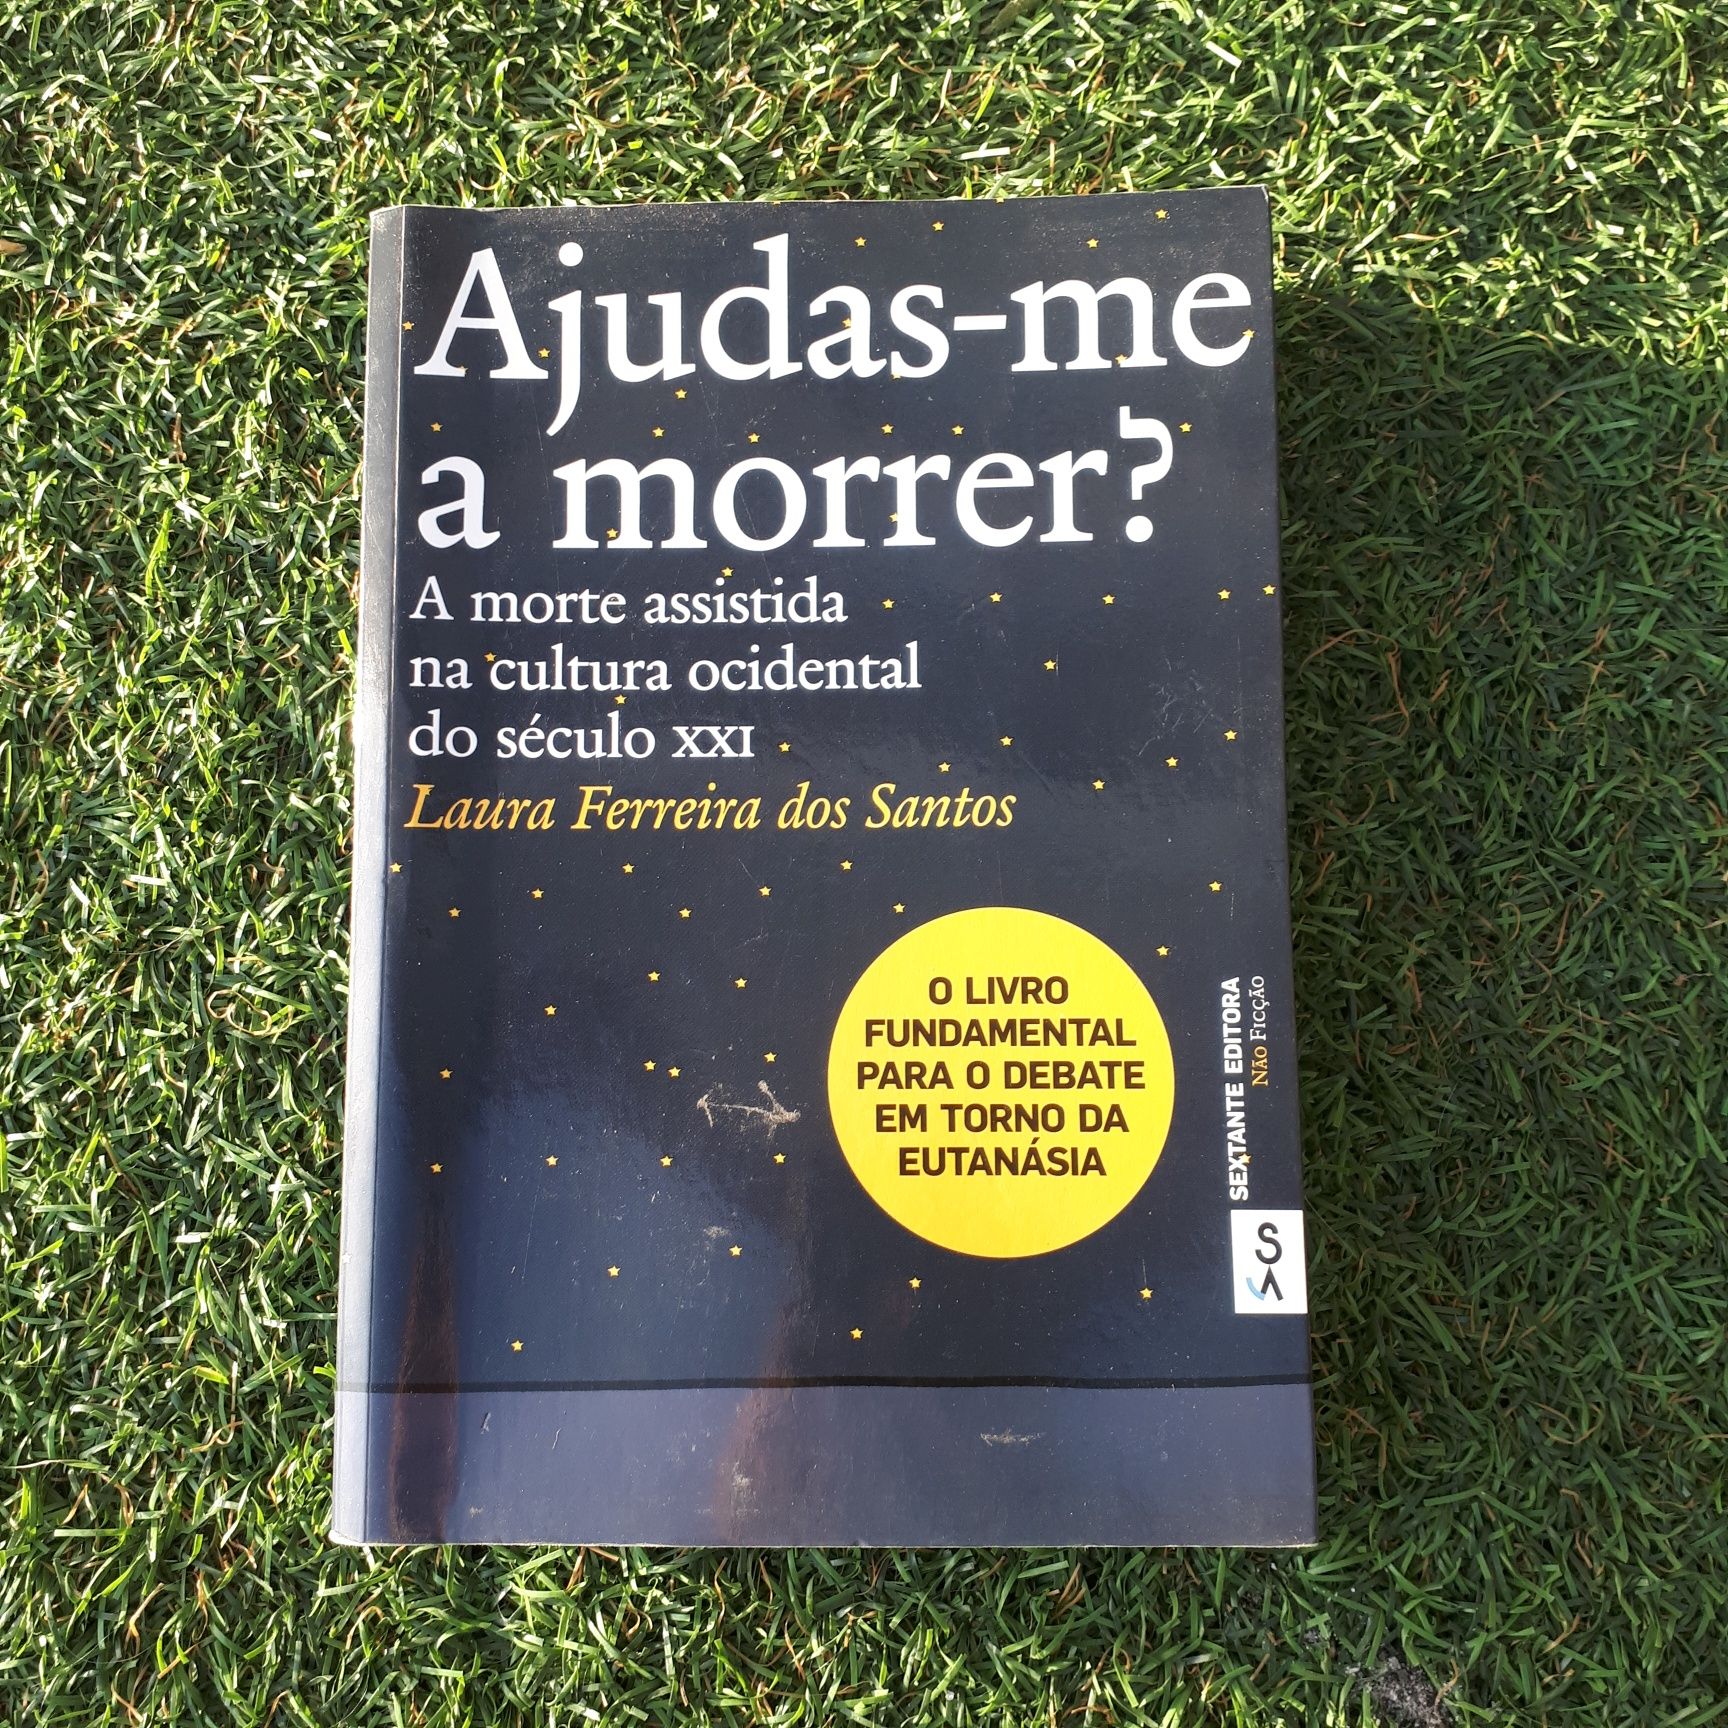 Livro "Ajudas-me a morrer?" de Laura Ferreira dos Santos